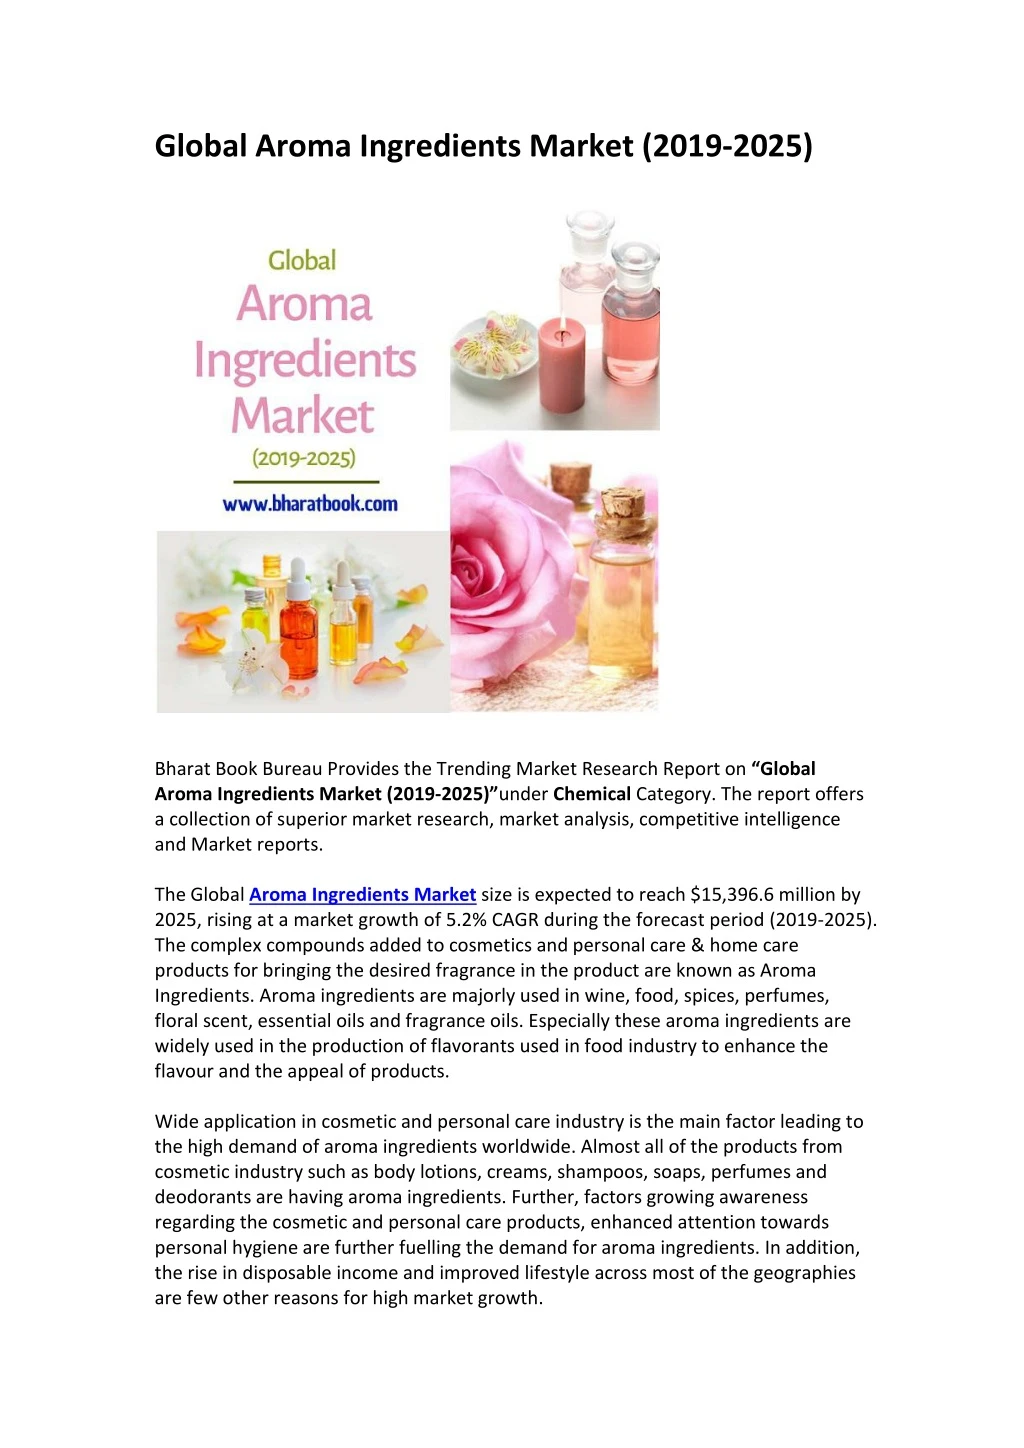 global aroma ingredients market 2019 2025